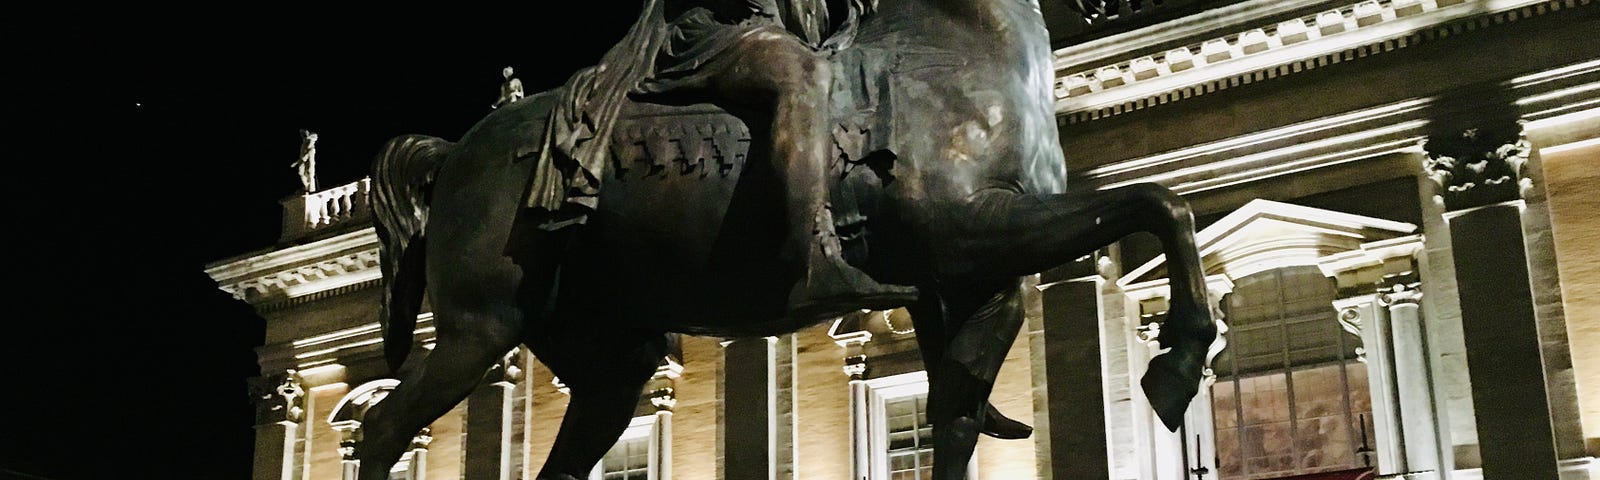 Equestrian statue of Marcus Aurelius.